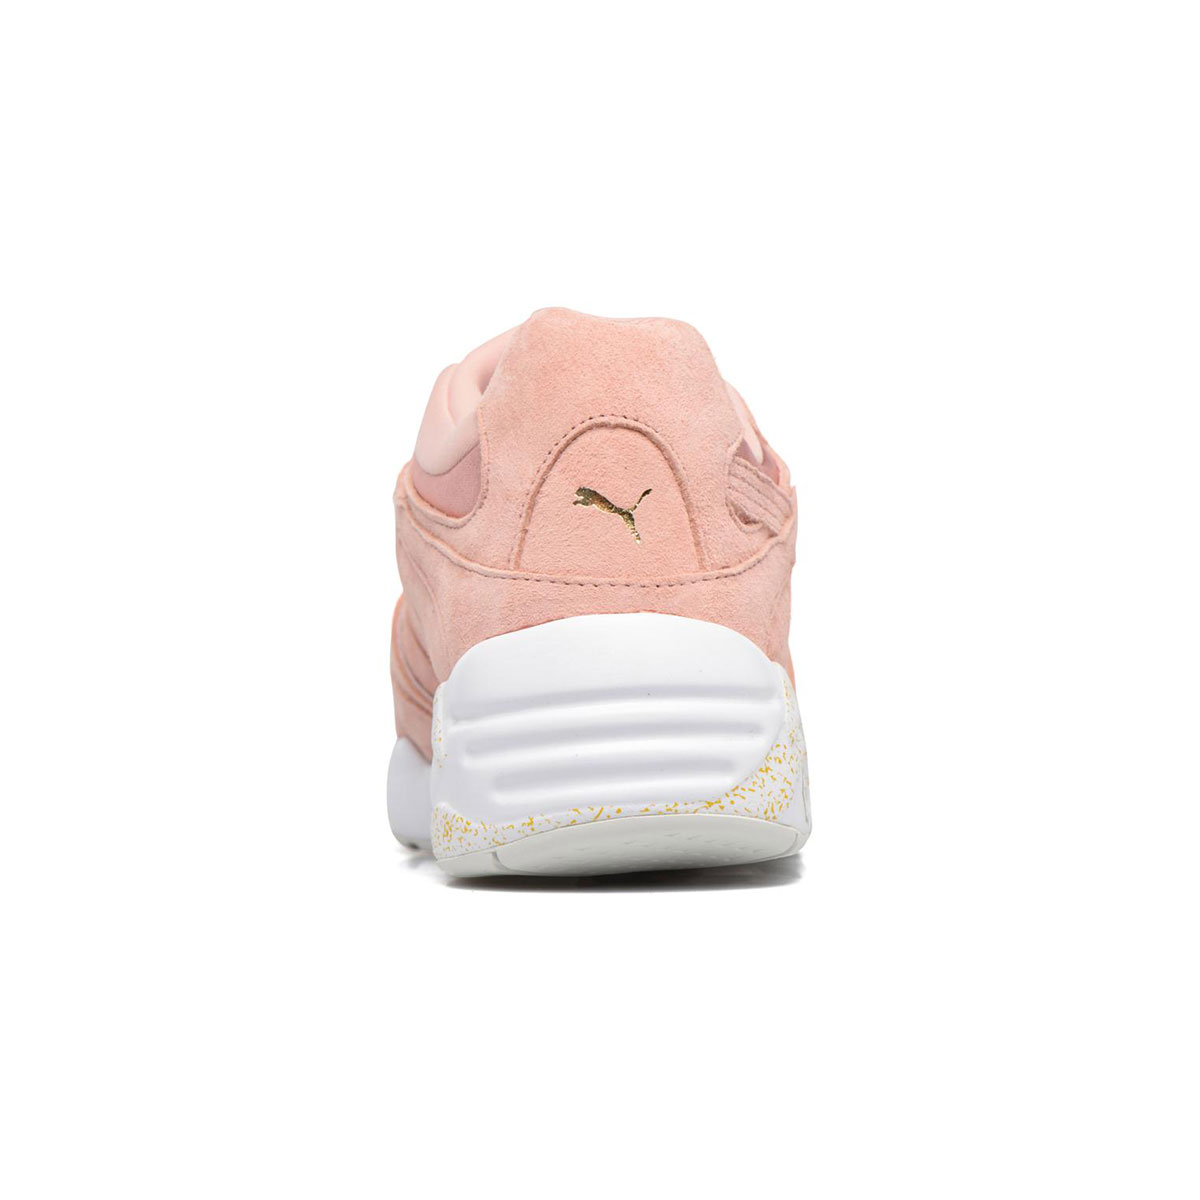 Puma Blaze Tech Wn's pink Дамски спортни обувки 364509-01